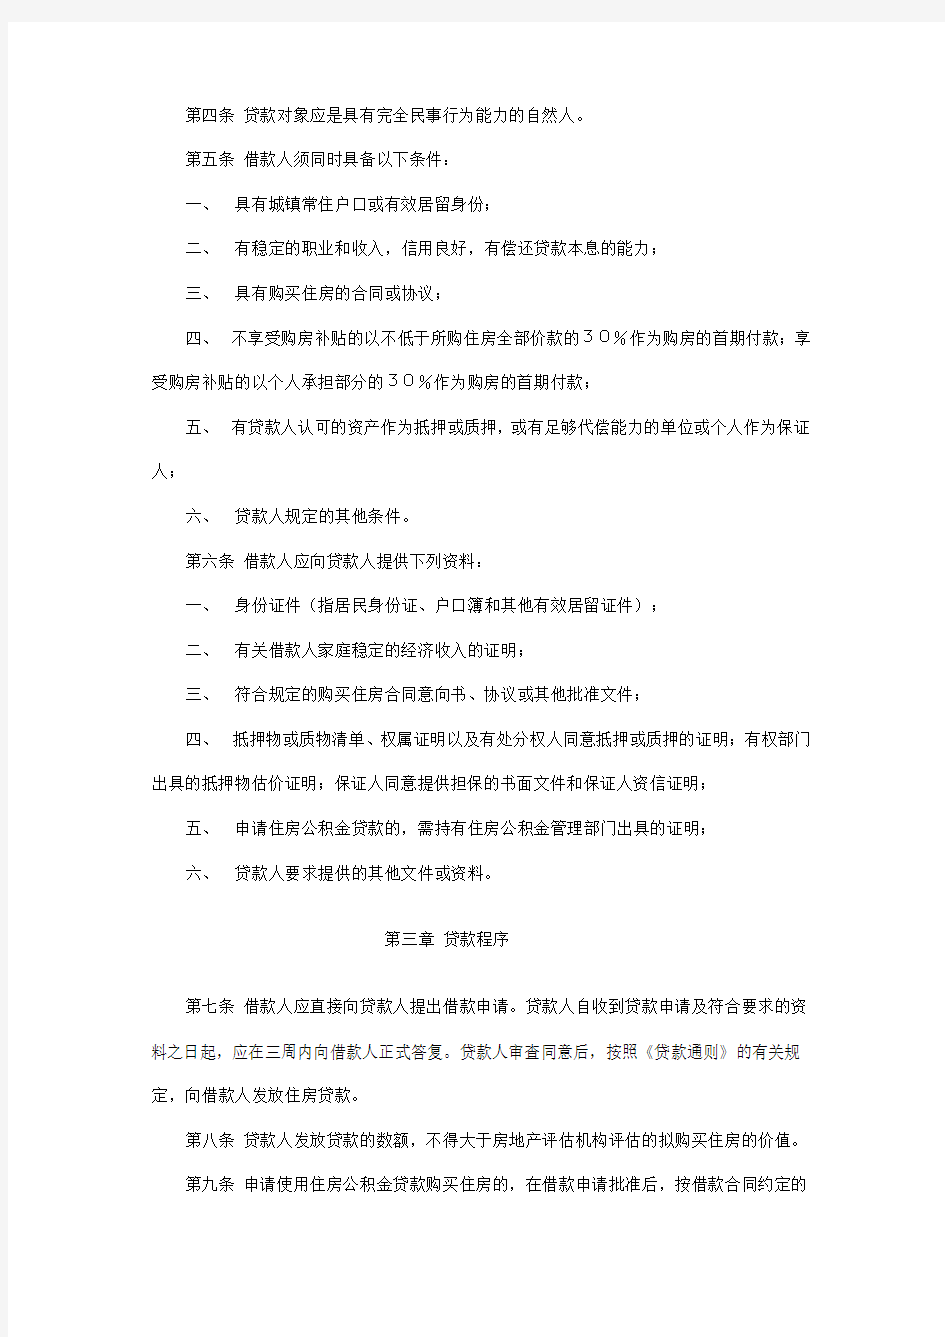 中国人民银行关于颁布《个人住房贷款管理办法》的通知